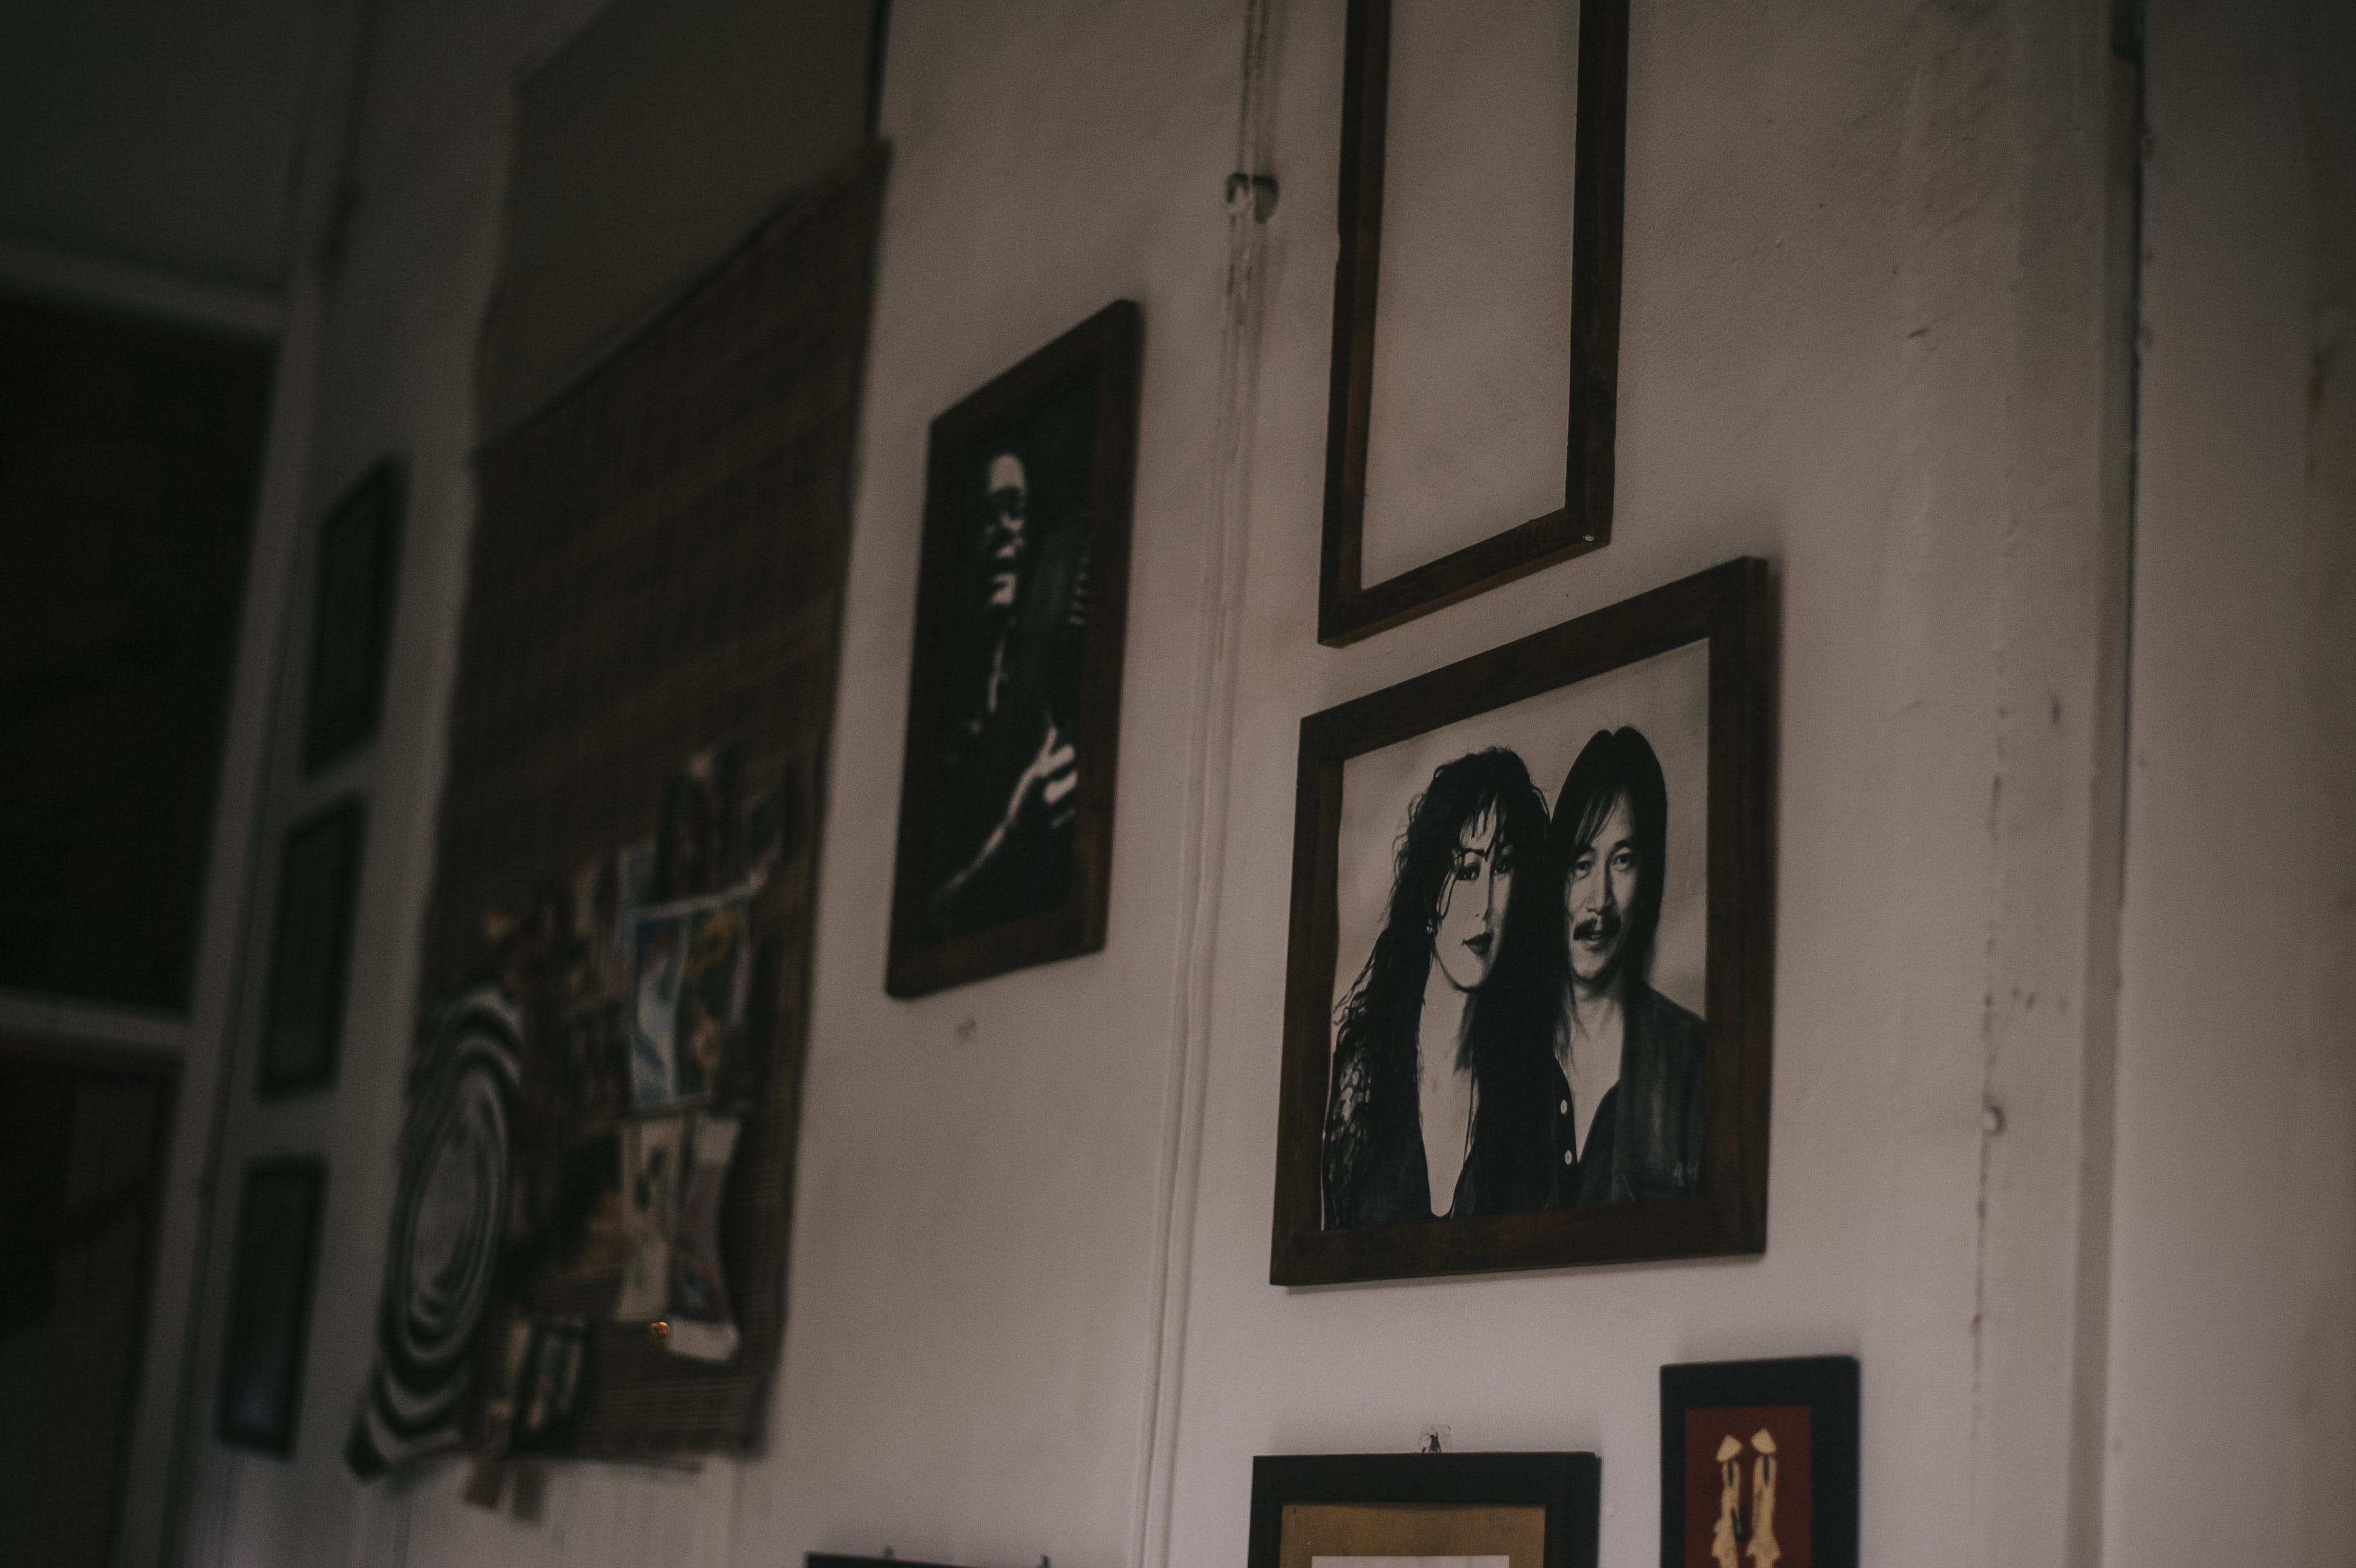 Gerahmte Porträts hängen an der Wand | Quelle: Pexels